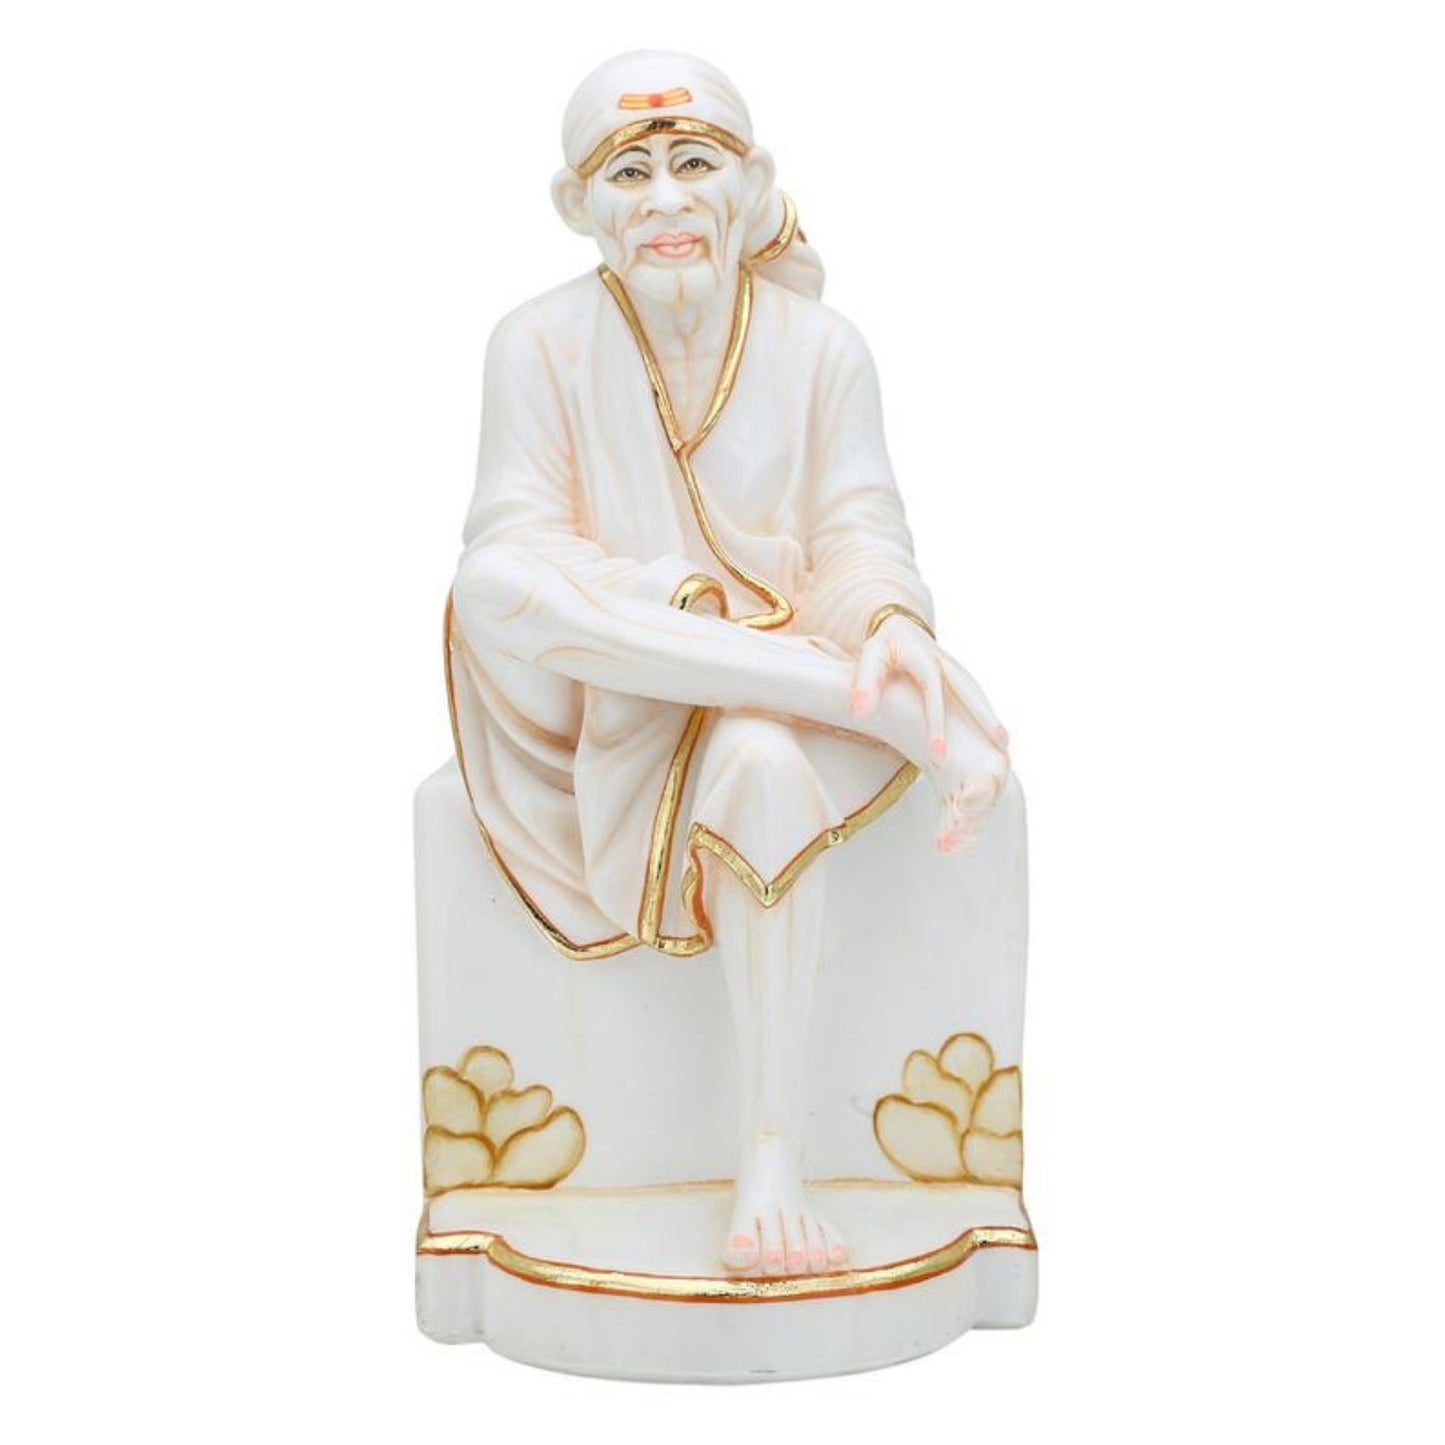 Estatua de Sai Baba Gran ídolo de Sai Baba de mármol, estatua divina, estatuilla de Sai Baba, Shirdi Sai Baba, Estatua de mármol de Sai Baba, Sri DattaGuru (12 pulgadas)